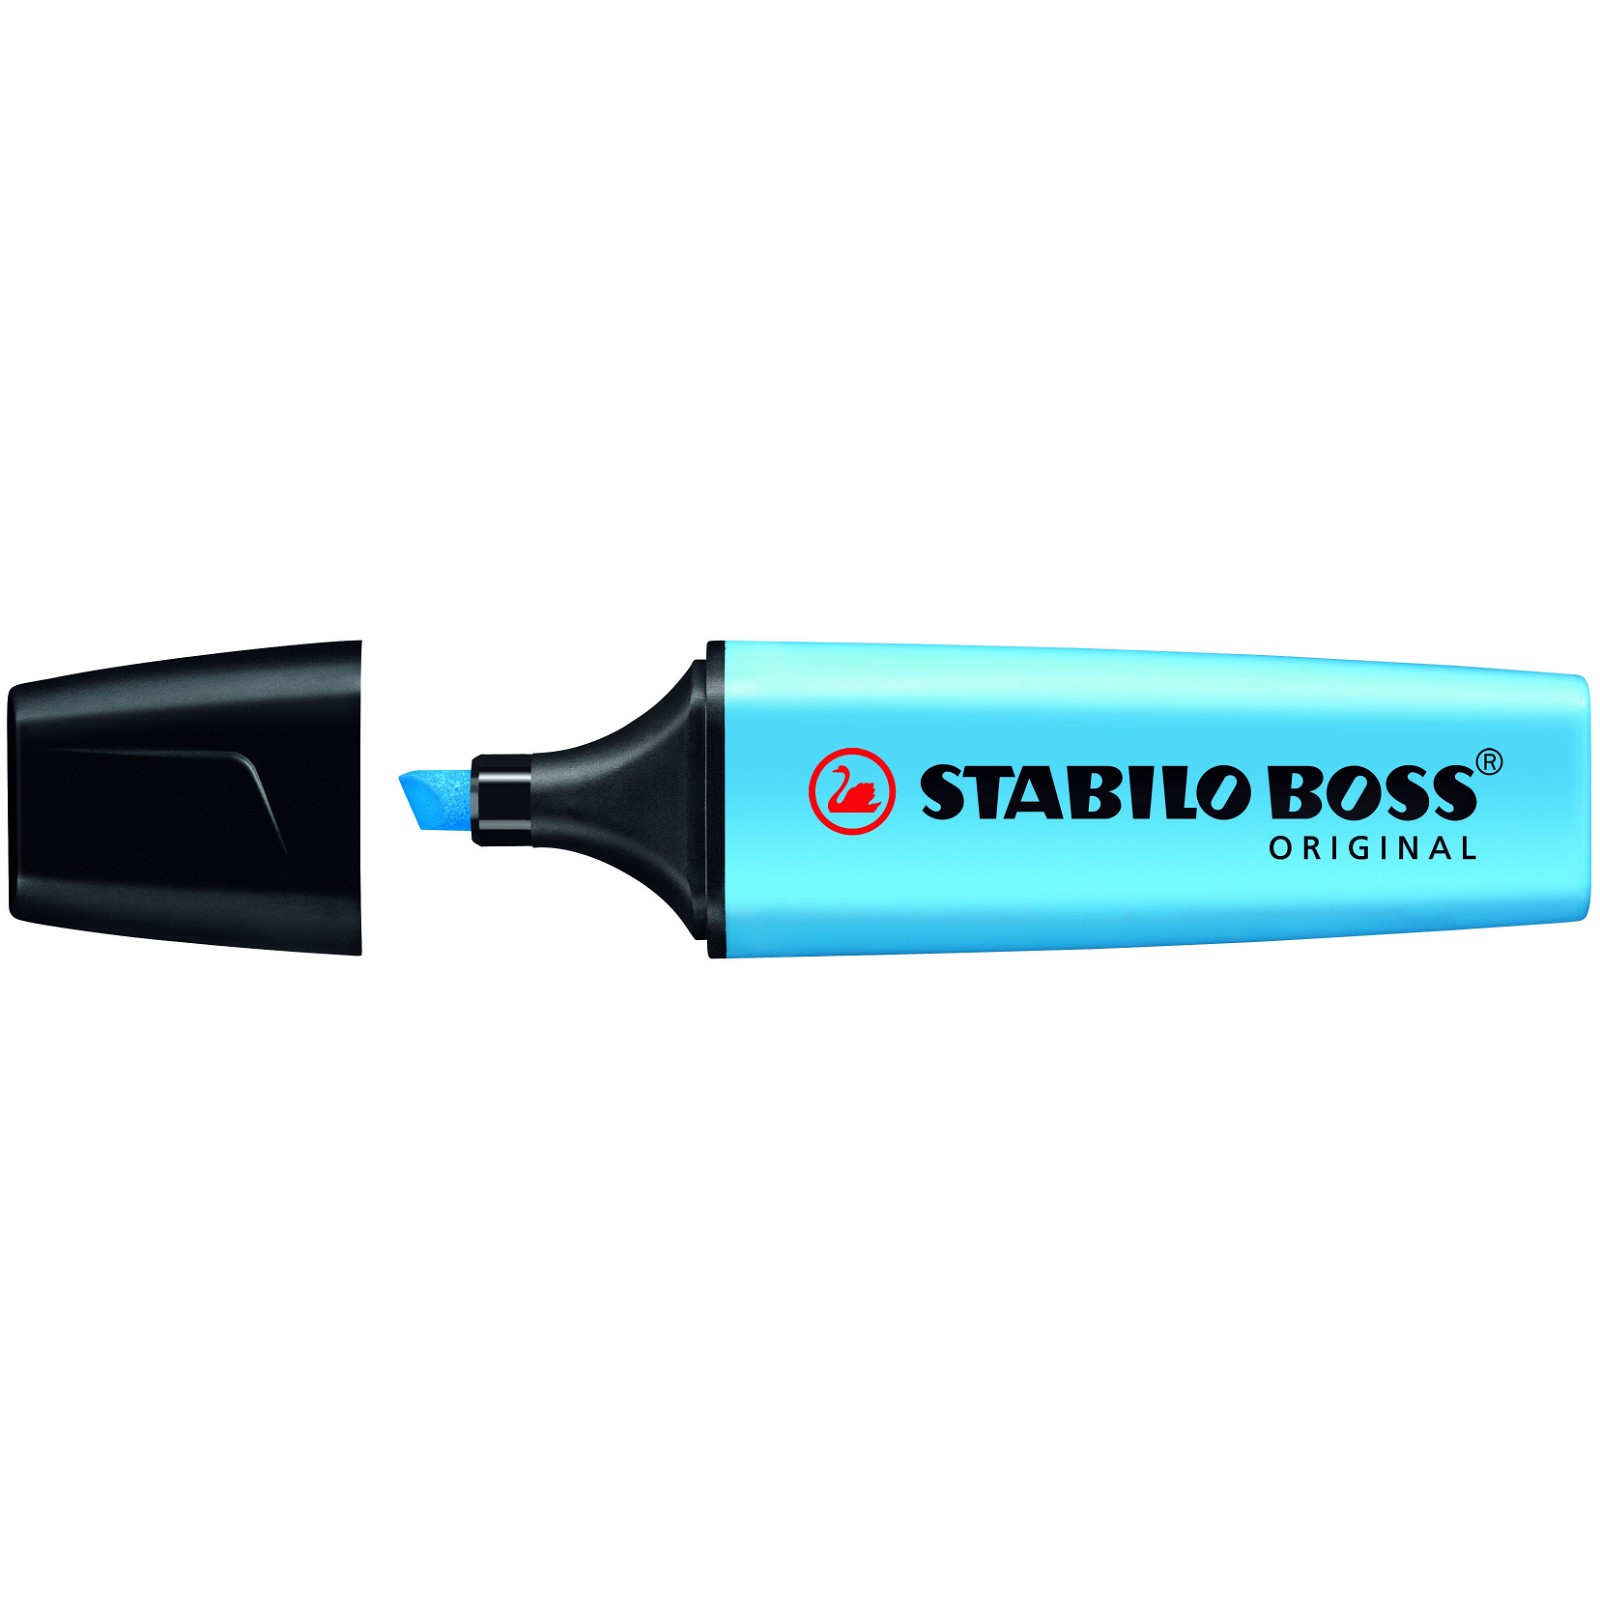 Stabilo Boss Original tekstmarker i farven blå